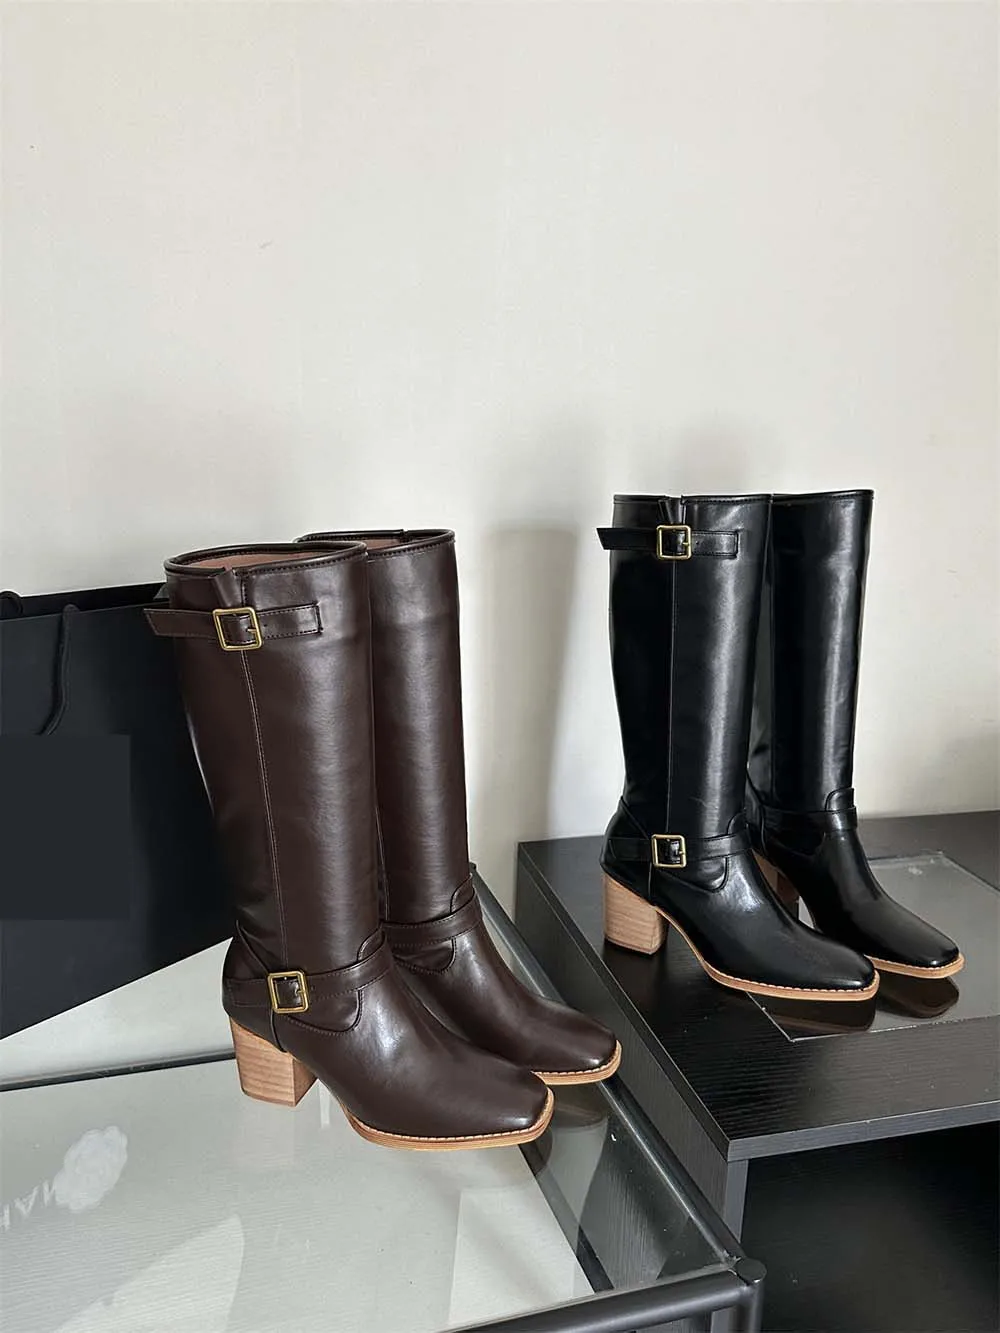 

Женские сапоги без застежки, черные или коричневые сапоги до колена, на толстом высоком каблуке, с ремешком и пряжкой, обувь в западном стиле, размеры 39, для зимы